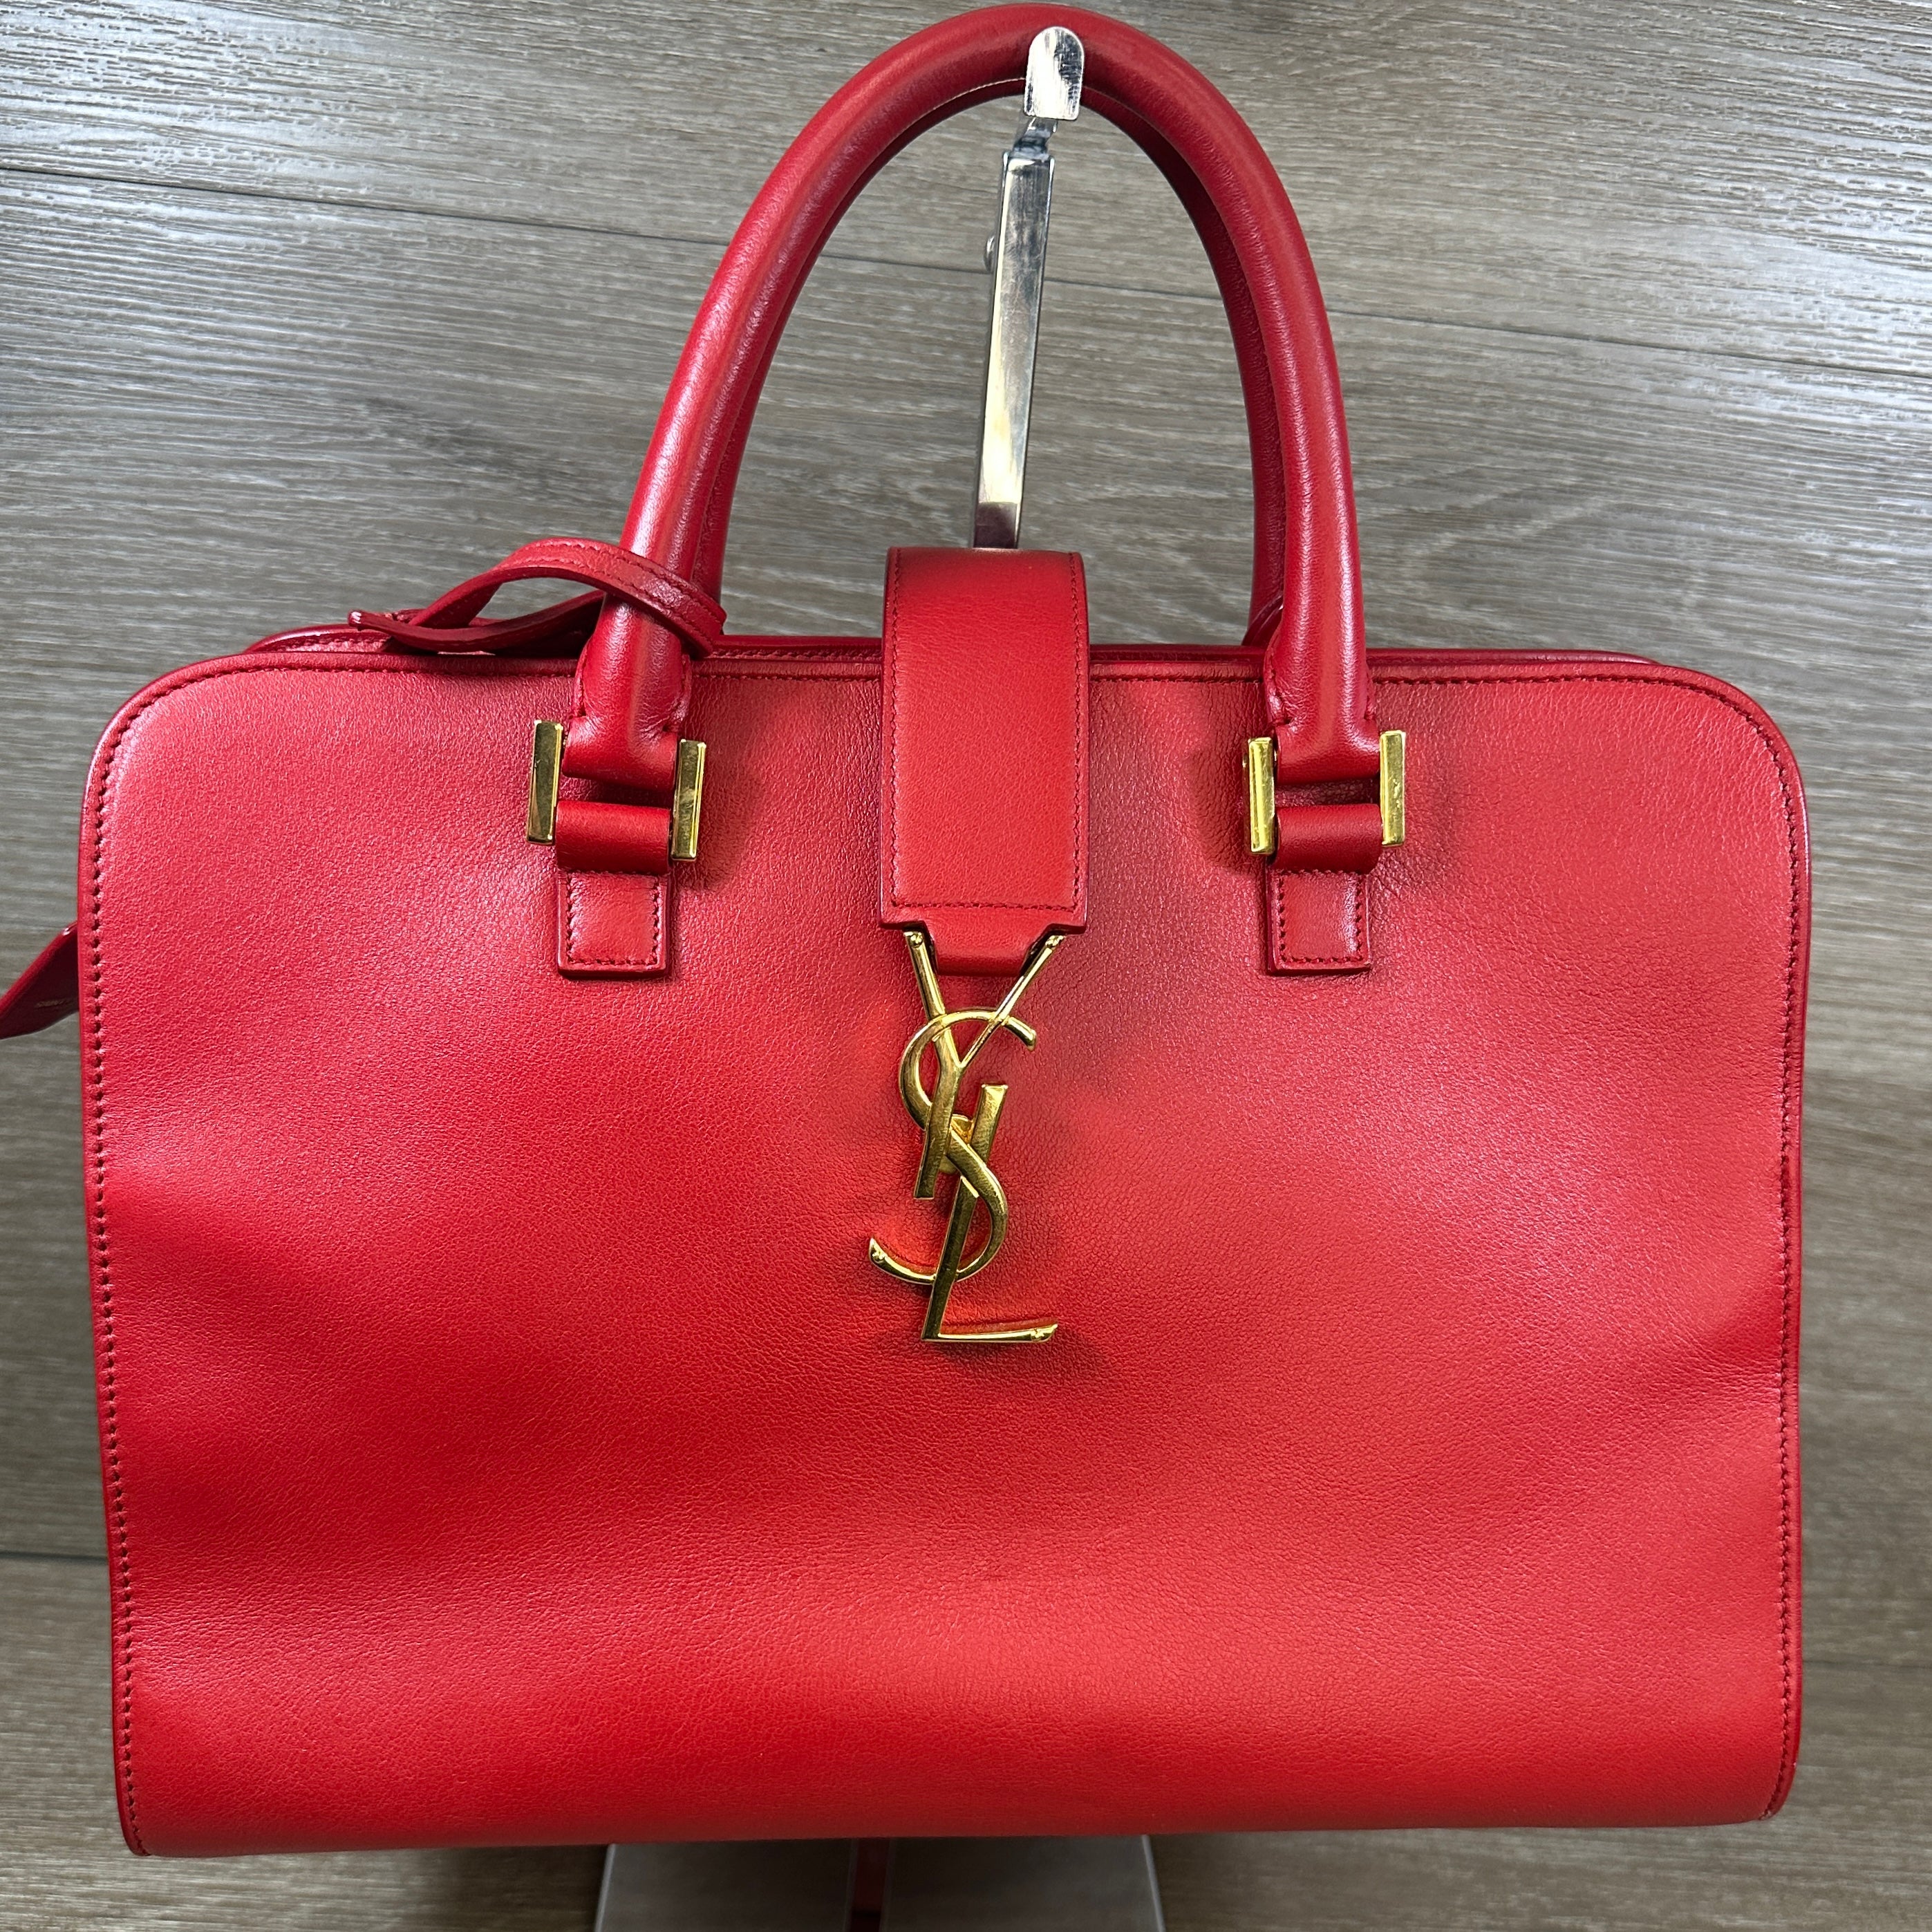 SAINT LAURENT Saint Laurent Leather Baby Cabas Handbag Red Ladies